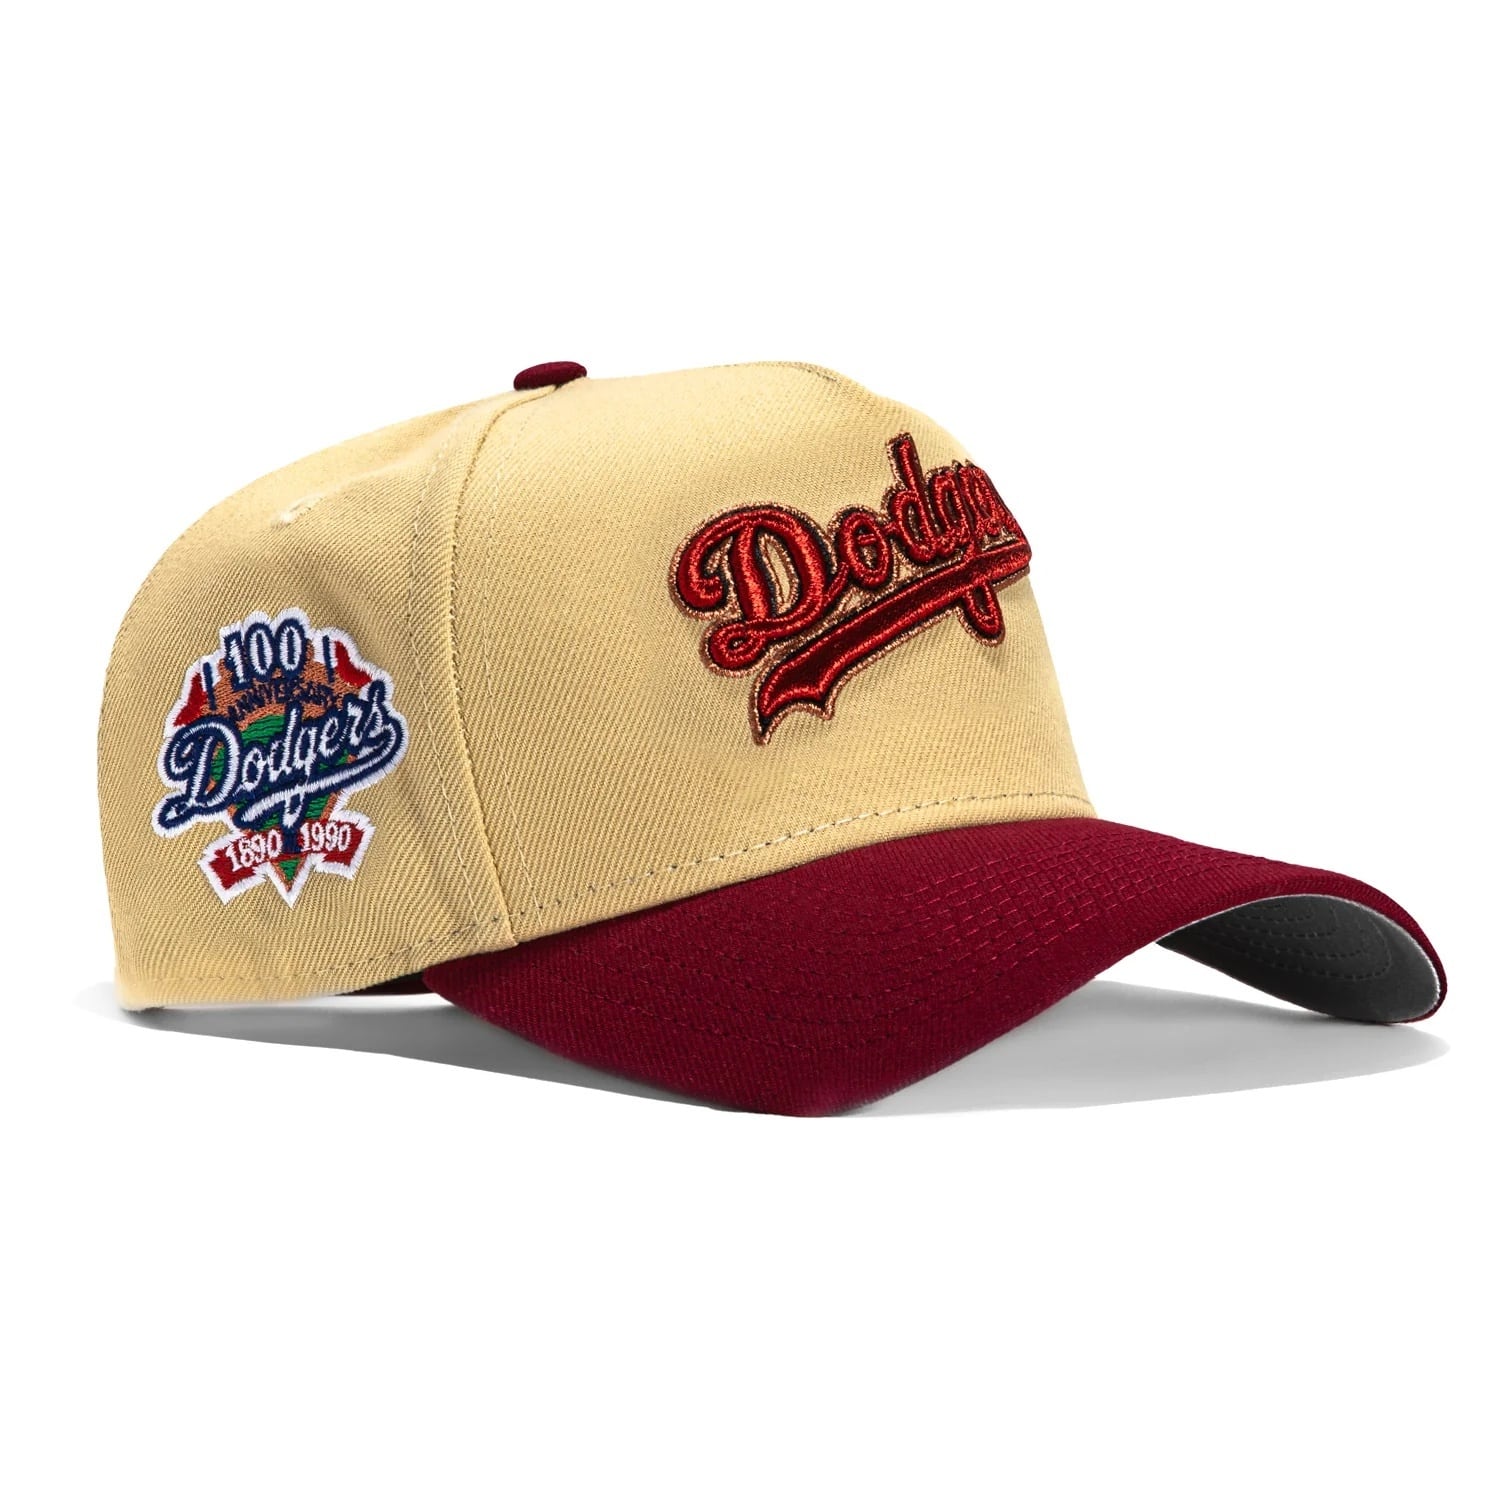 ニューエラ キャップ ロサンゼルス ドジャース NEW ERA MLB 9FORTY A-FRAME LOS ANGELES DODGERS  100TH ANNIVERSARY PATCH SNAPBACK